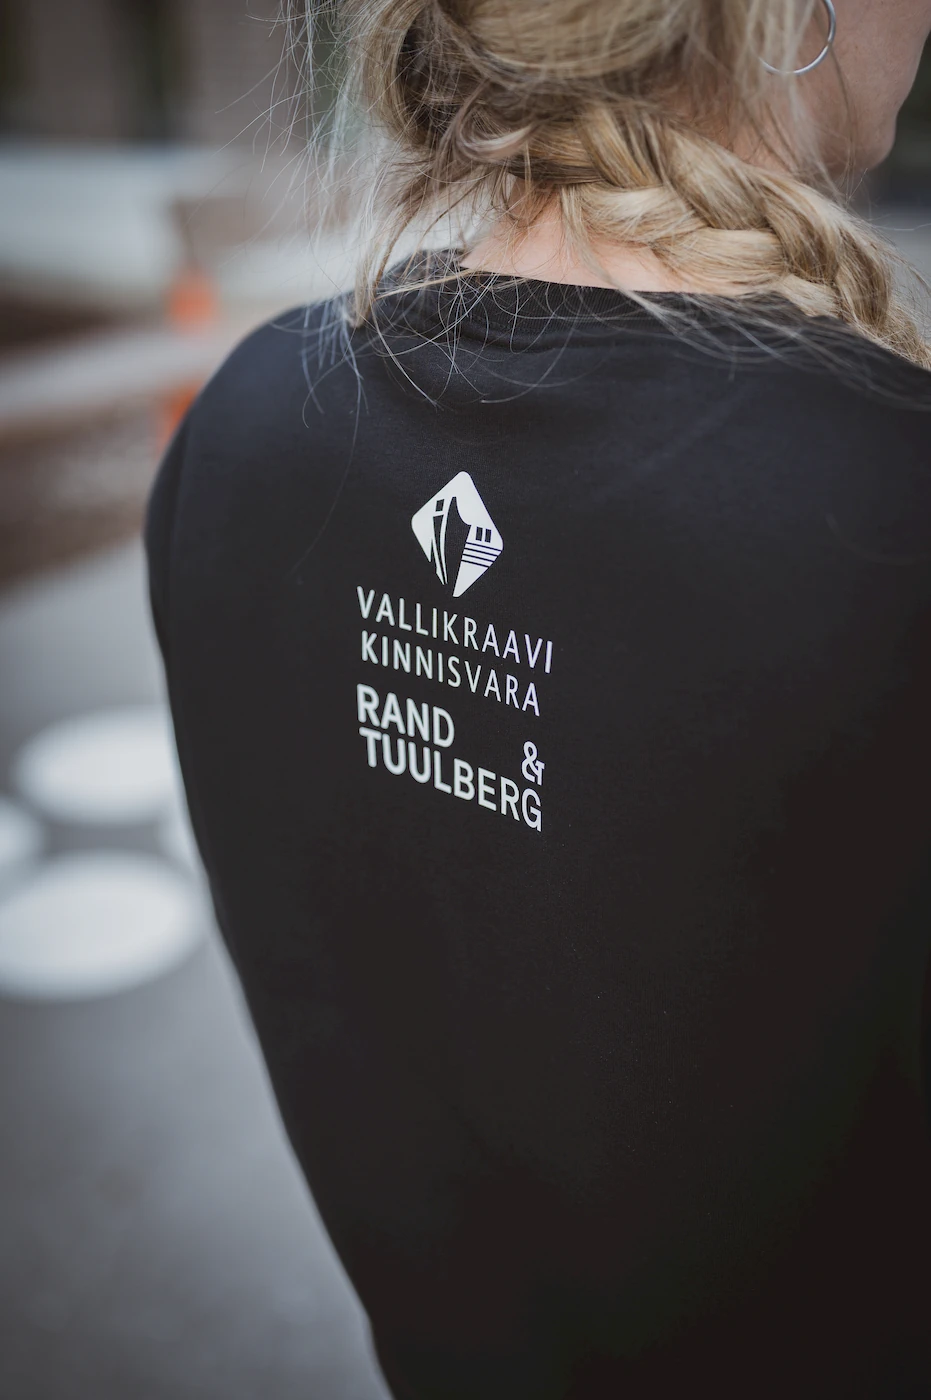 Naine kannab musta pusa, millel on seljal Vallikraavi Kinnisvara ja Rand & Tuulberg logod. Pilt rõhutab ettevõtte brändingut ja professionaalset ilmet, olles osa Blacksunseti eritellimusel valmistatud riiete kollektsioonist.